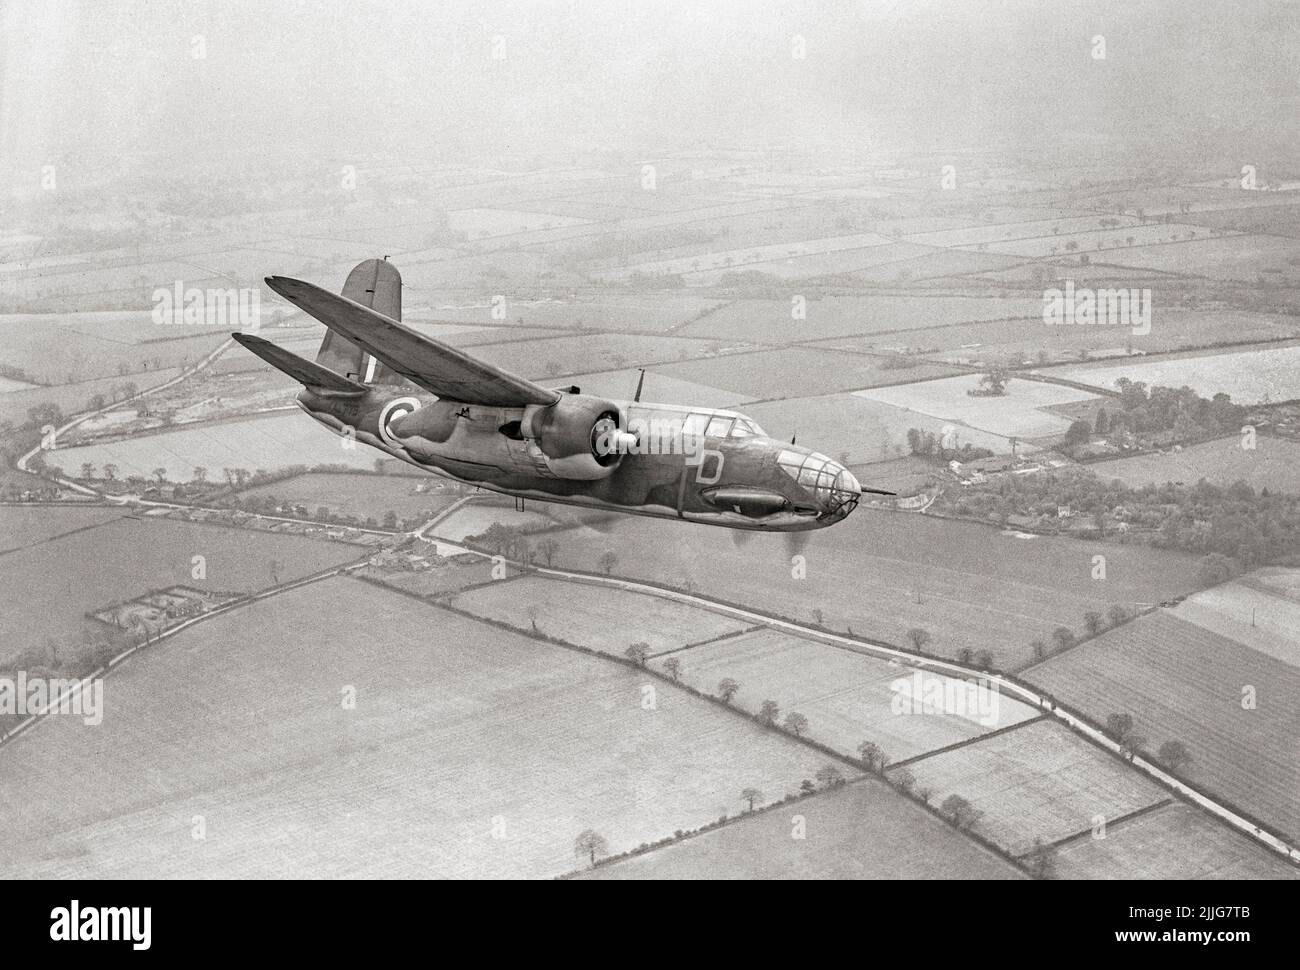 Un Boston Mark III, del Escuadrón Nº 88 de la RAF con base en Attlebridge, Norfolk, en vuelo. Era un bombardero mediano americano, un avión de ataque, un intruso nocturno, un caza nocturno y un avión de reconocimiento de la Segunda Guerra Mundial Foto de stock